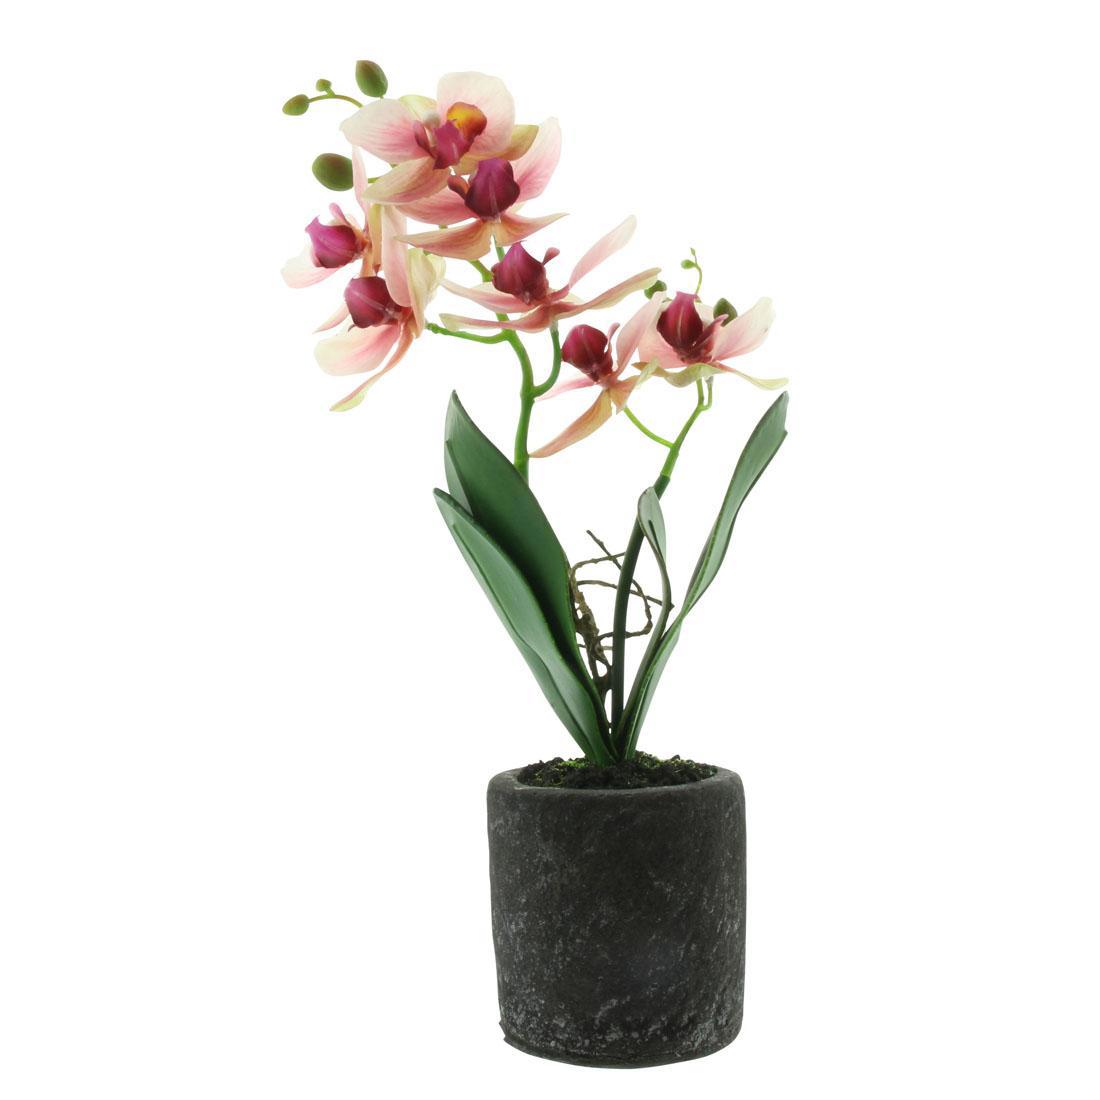 90028927 Декоративное растение Орхидея 07200 STLM-0089985 FRANK